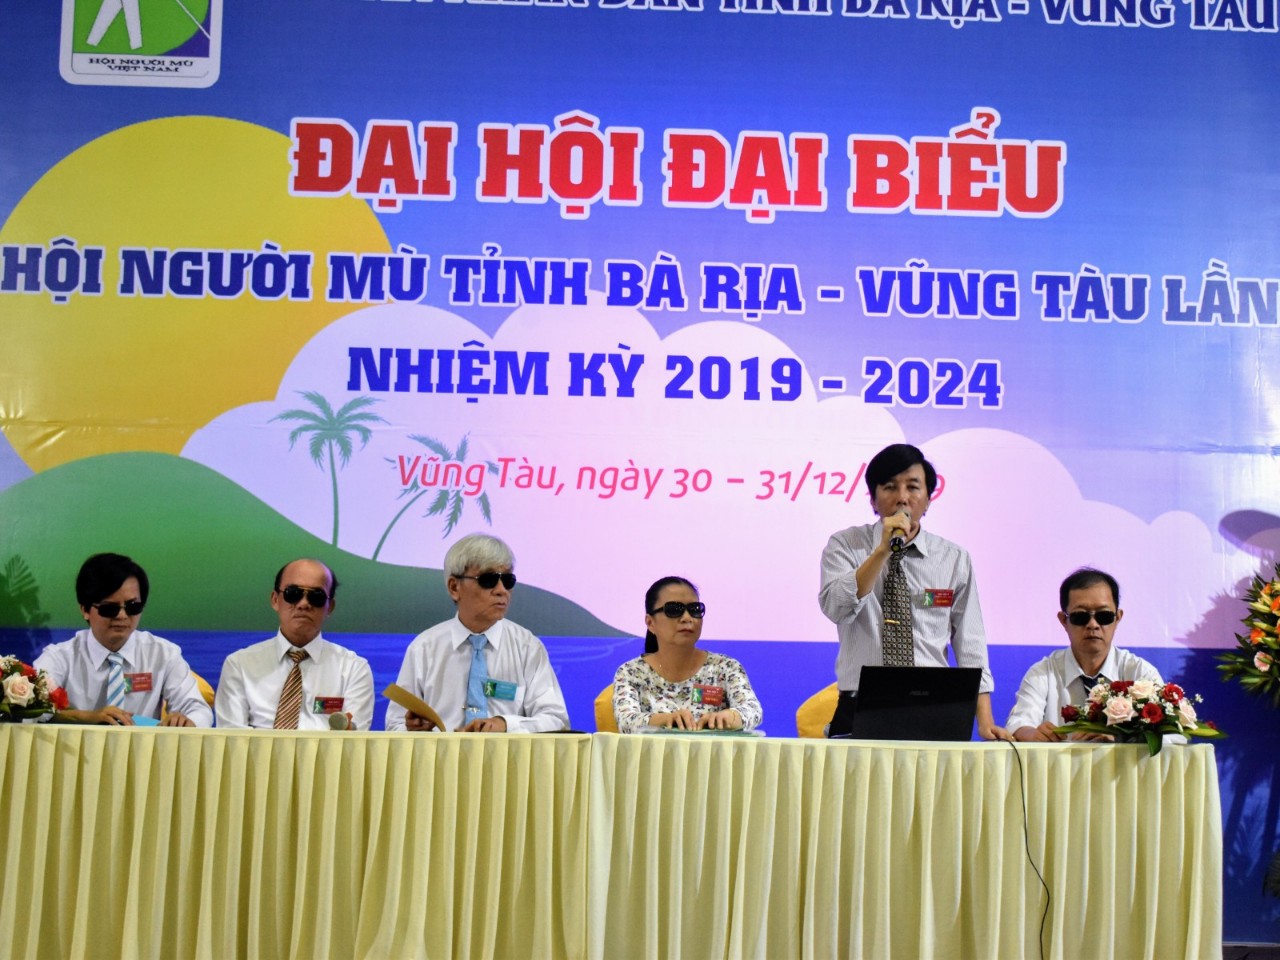 Các đại biểu BCH khóa V, nhiệm kỳ 2019 - 2024 ra mắt tại Đại hội.